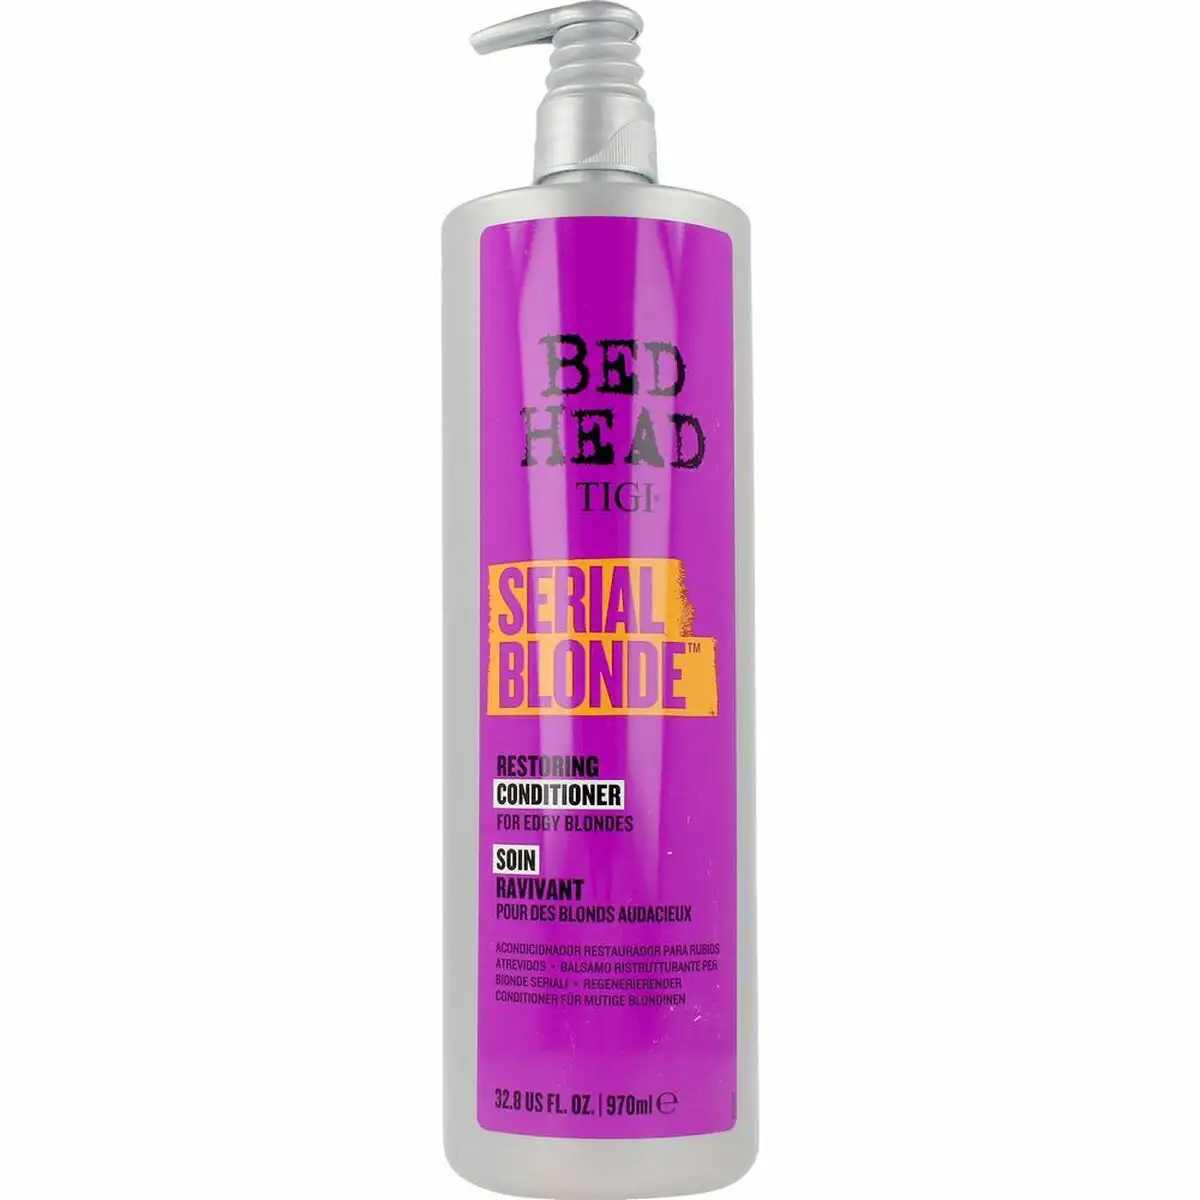 Apres shampooing tigi bed head serial blonde purple 970 ml _6177. DIAYTAR SENEGAL - L'Art de Magasiner sans Frontières. Parcourez notre vaste sélection d'articles et trouvez tout ce dont vous avez besoin, du chic à l'authentique, du moderne au traditionnel.